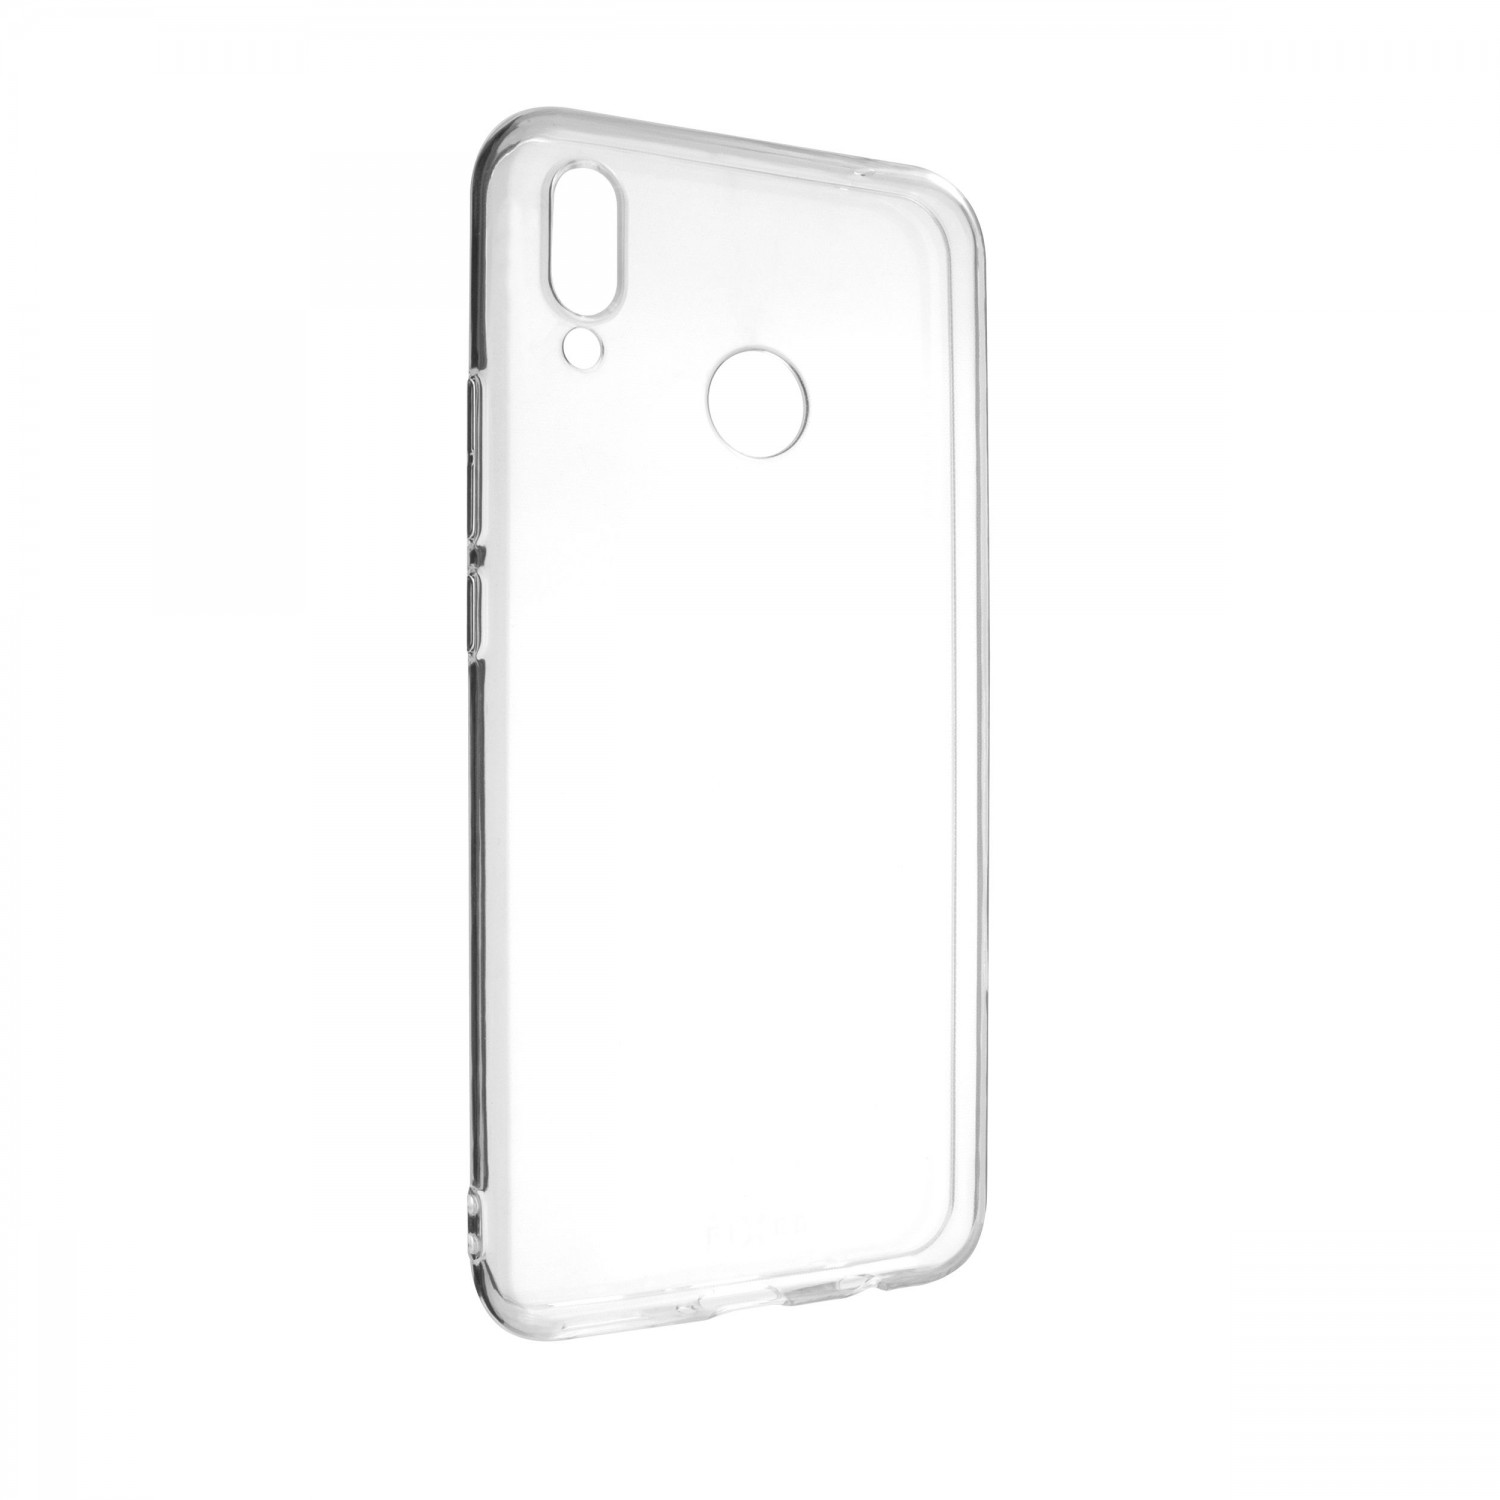 Ultratenké silikonové pouzdro FIXED Skin pro Huawei Nova 3i, transparentní